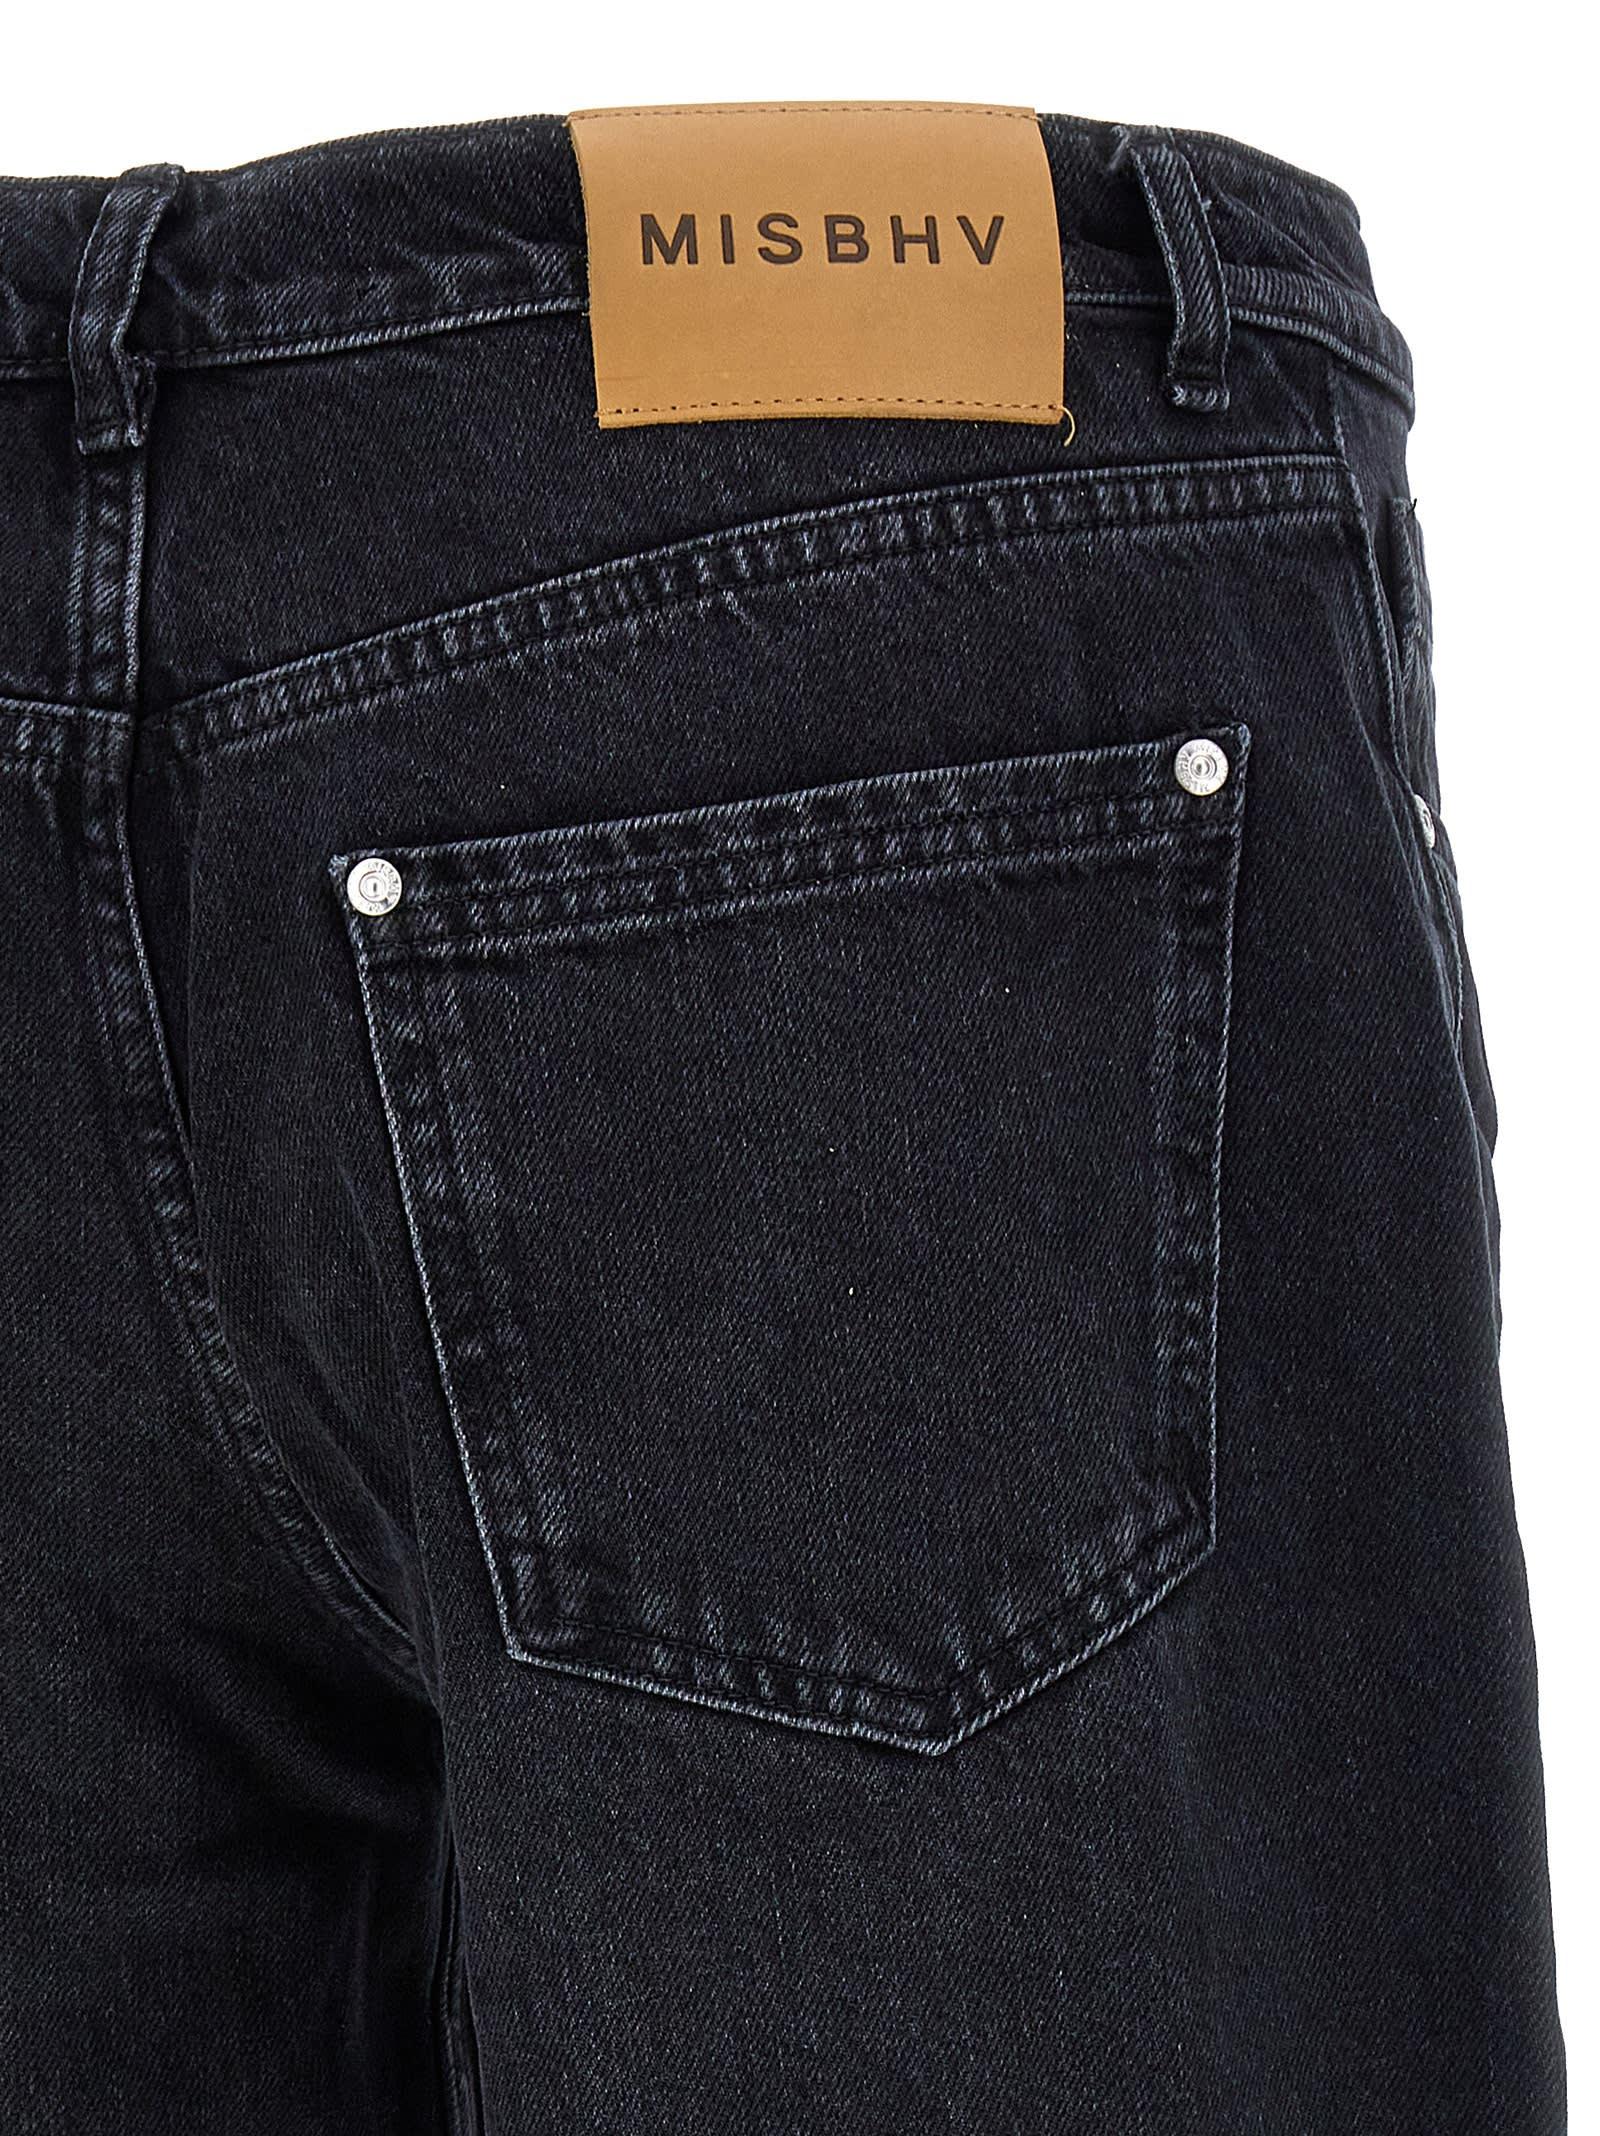 MISBHV Men's Monogram Carpenter Jeans